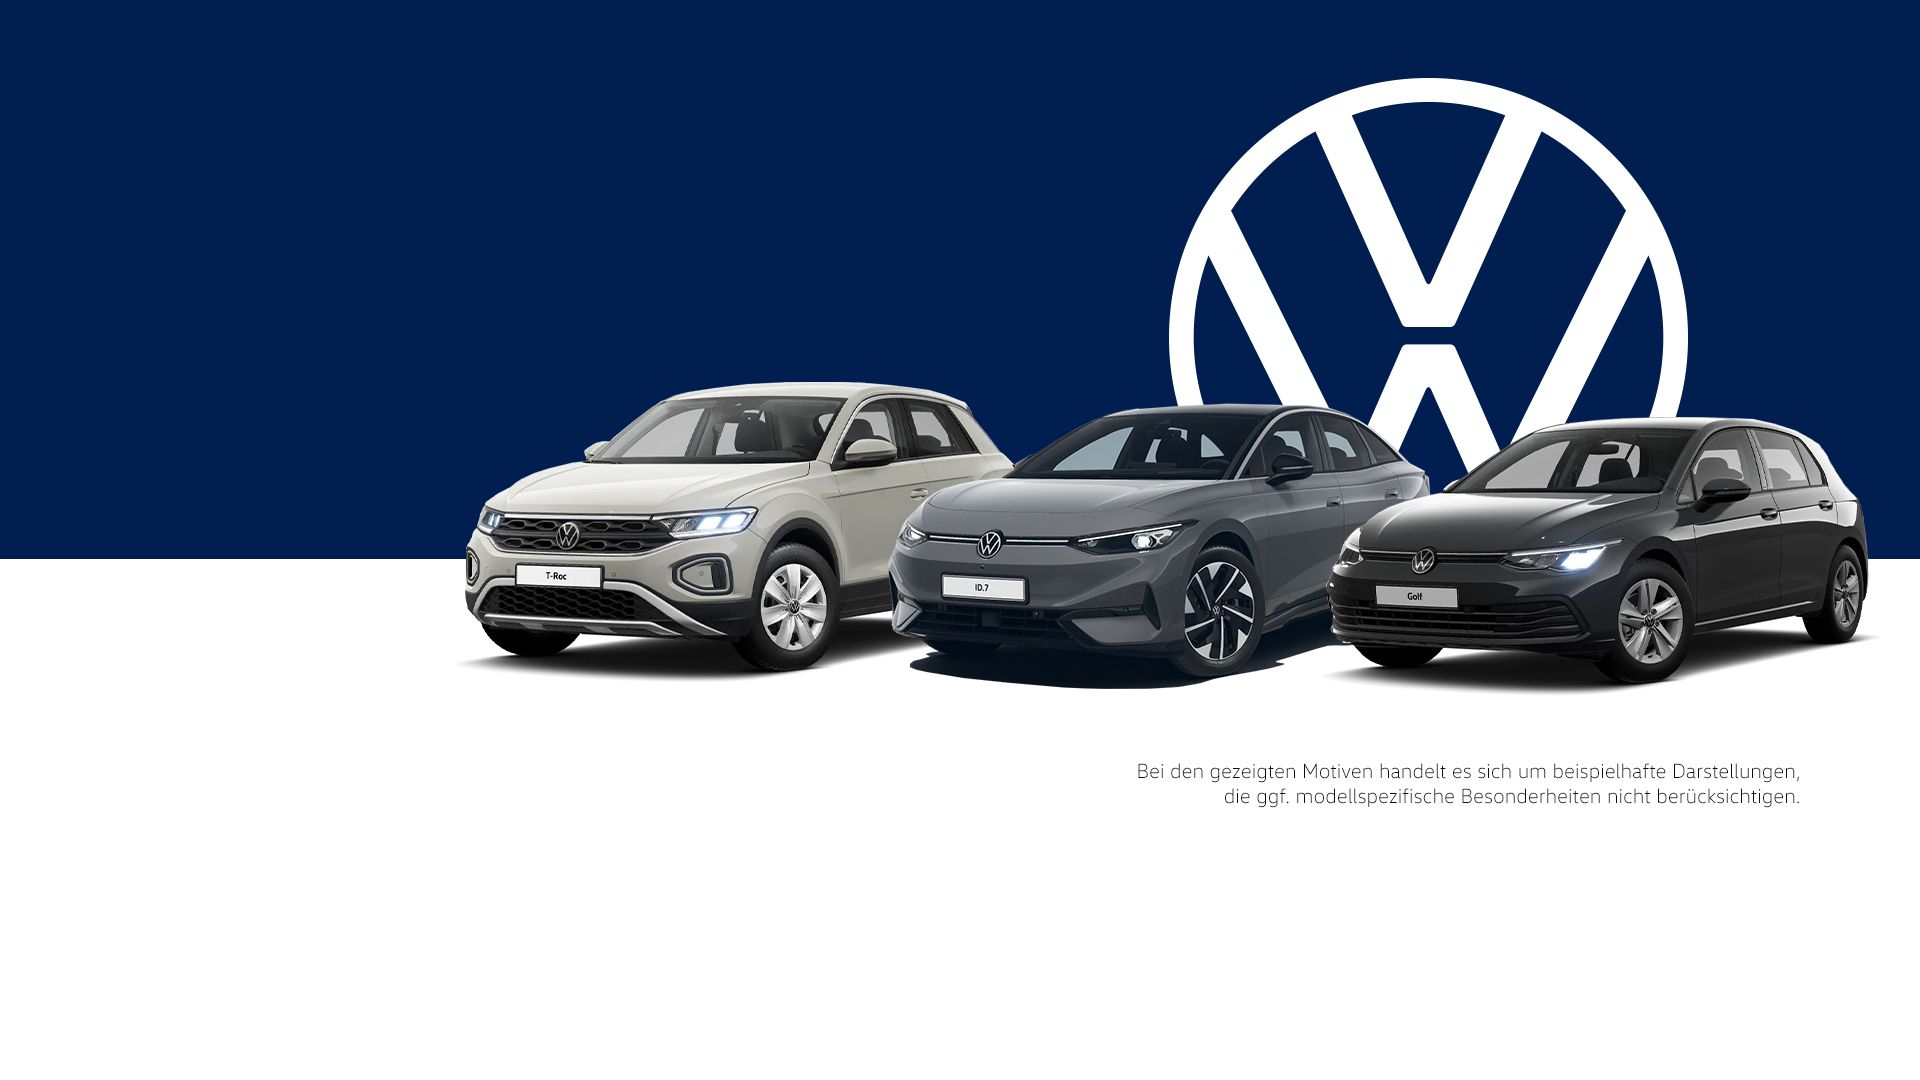 beispielhafte Darstellung von 3 VW-Modellen